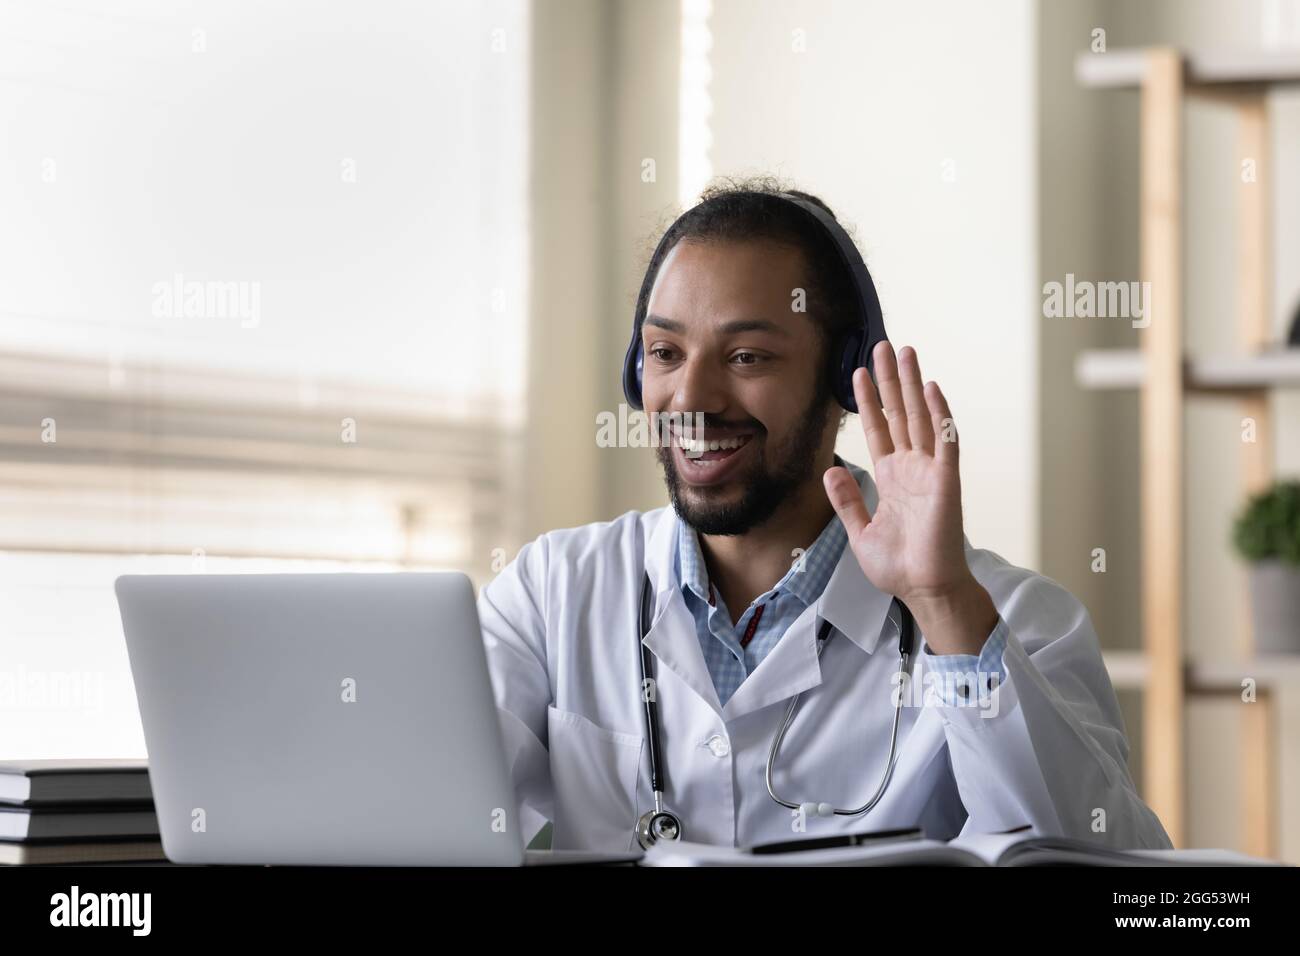 Fröhlicher, freundlicher junger afroamerikanischer Arzt, der ein Videoanrufsmeeting hält. Stockfoto